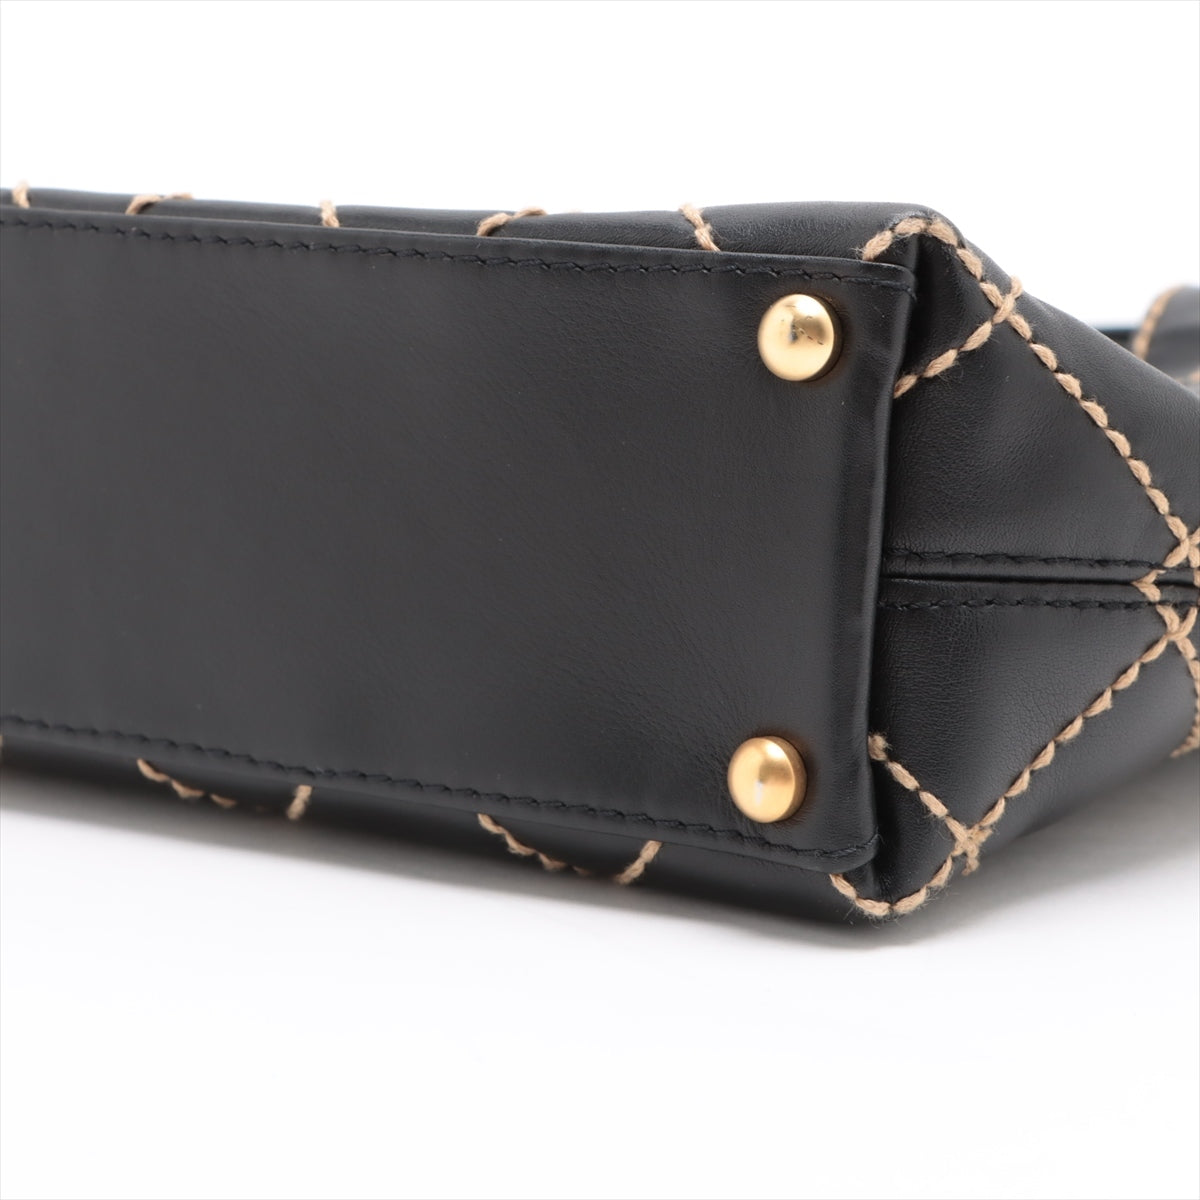 Chanel Wild Stitch Leather Hand bag Black matte gold hardware 7XXXXXX